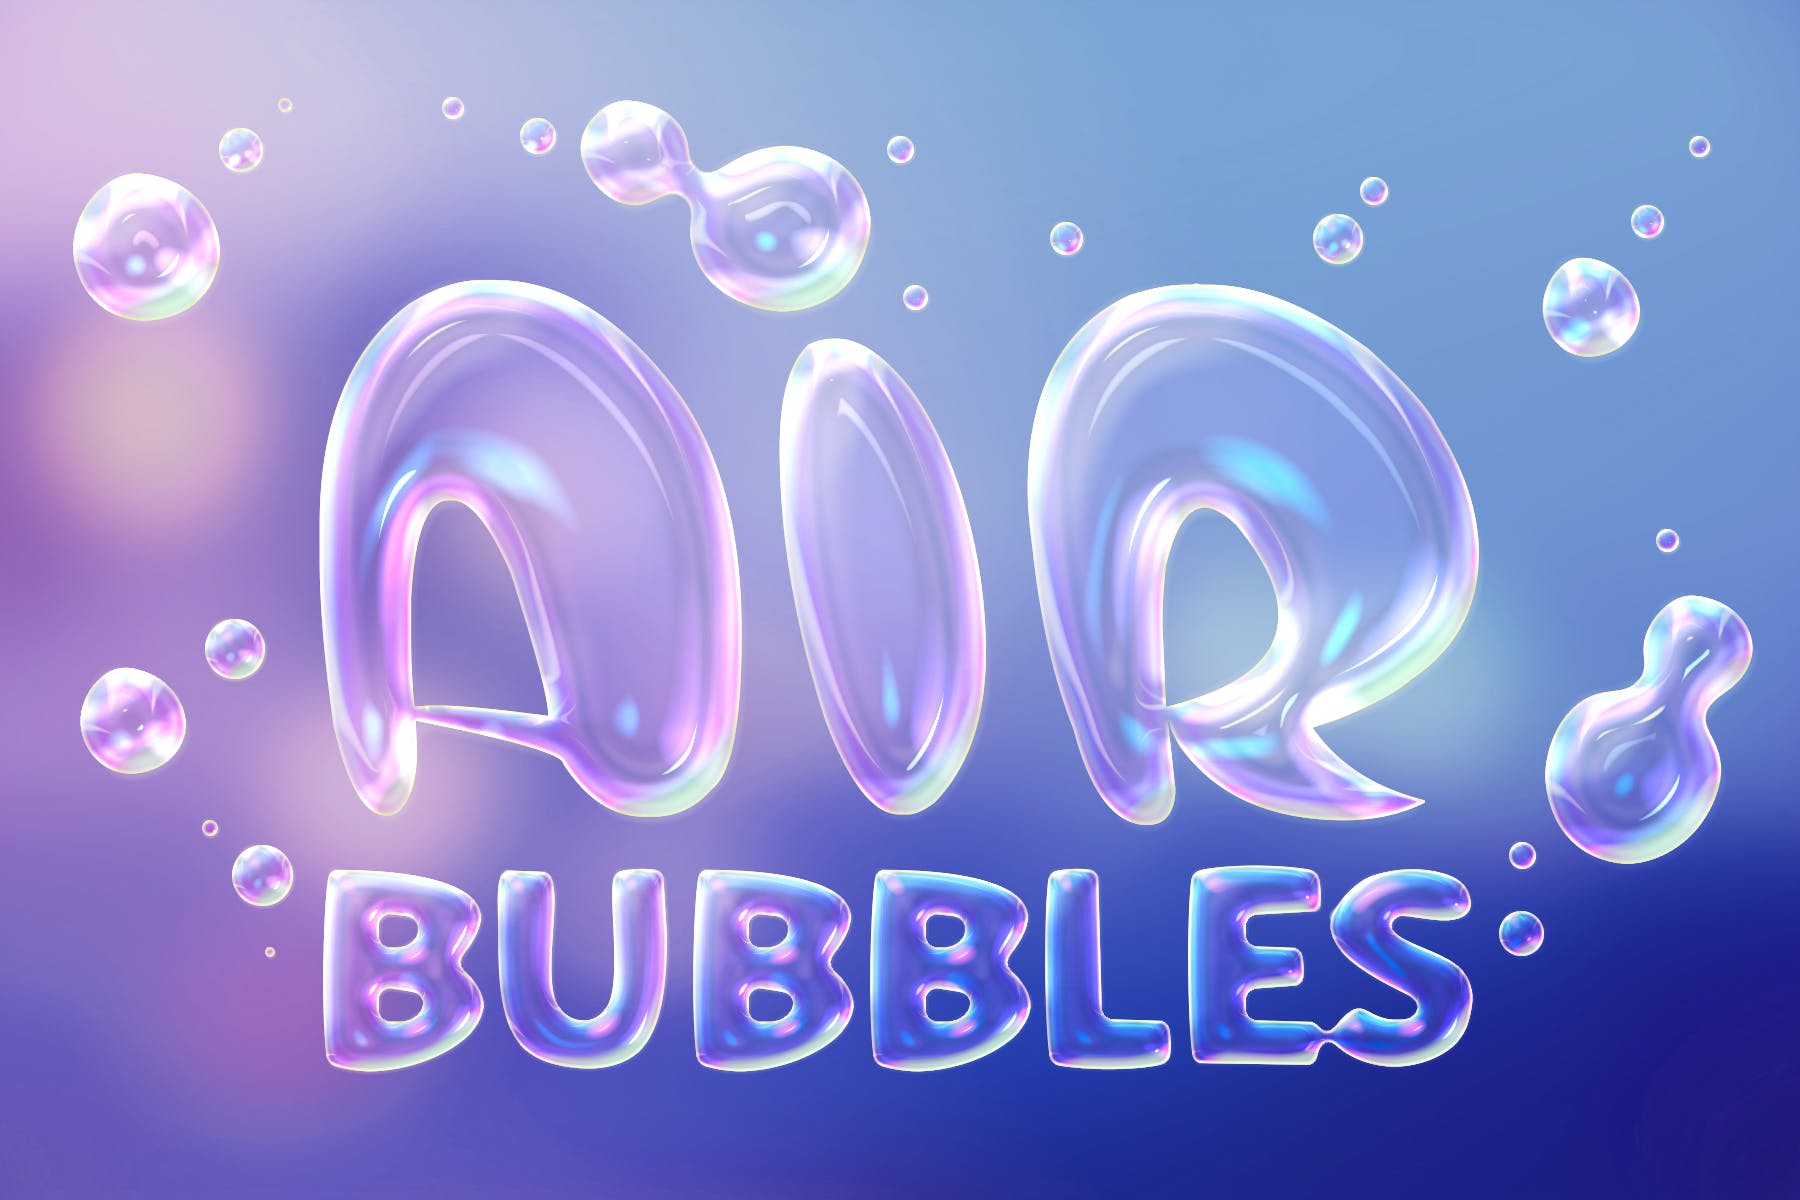 肥皂泡文字特效第一素材精选PS动作 Soap Bubbles Photoshop Action插图(4)